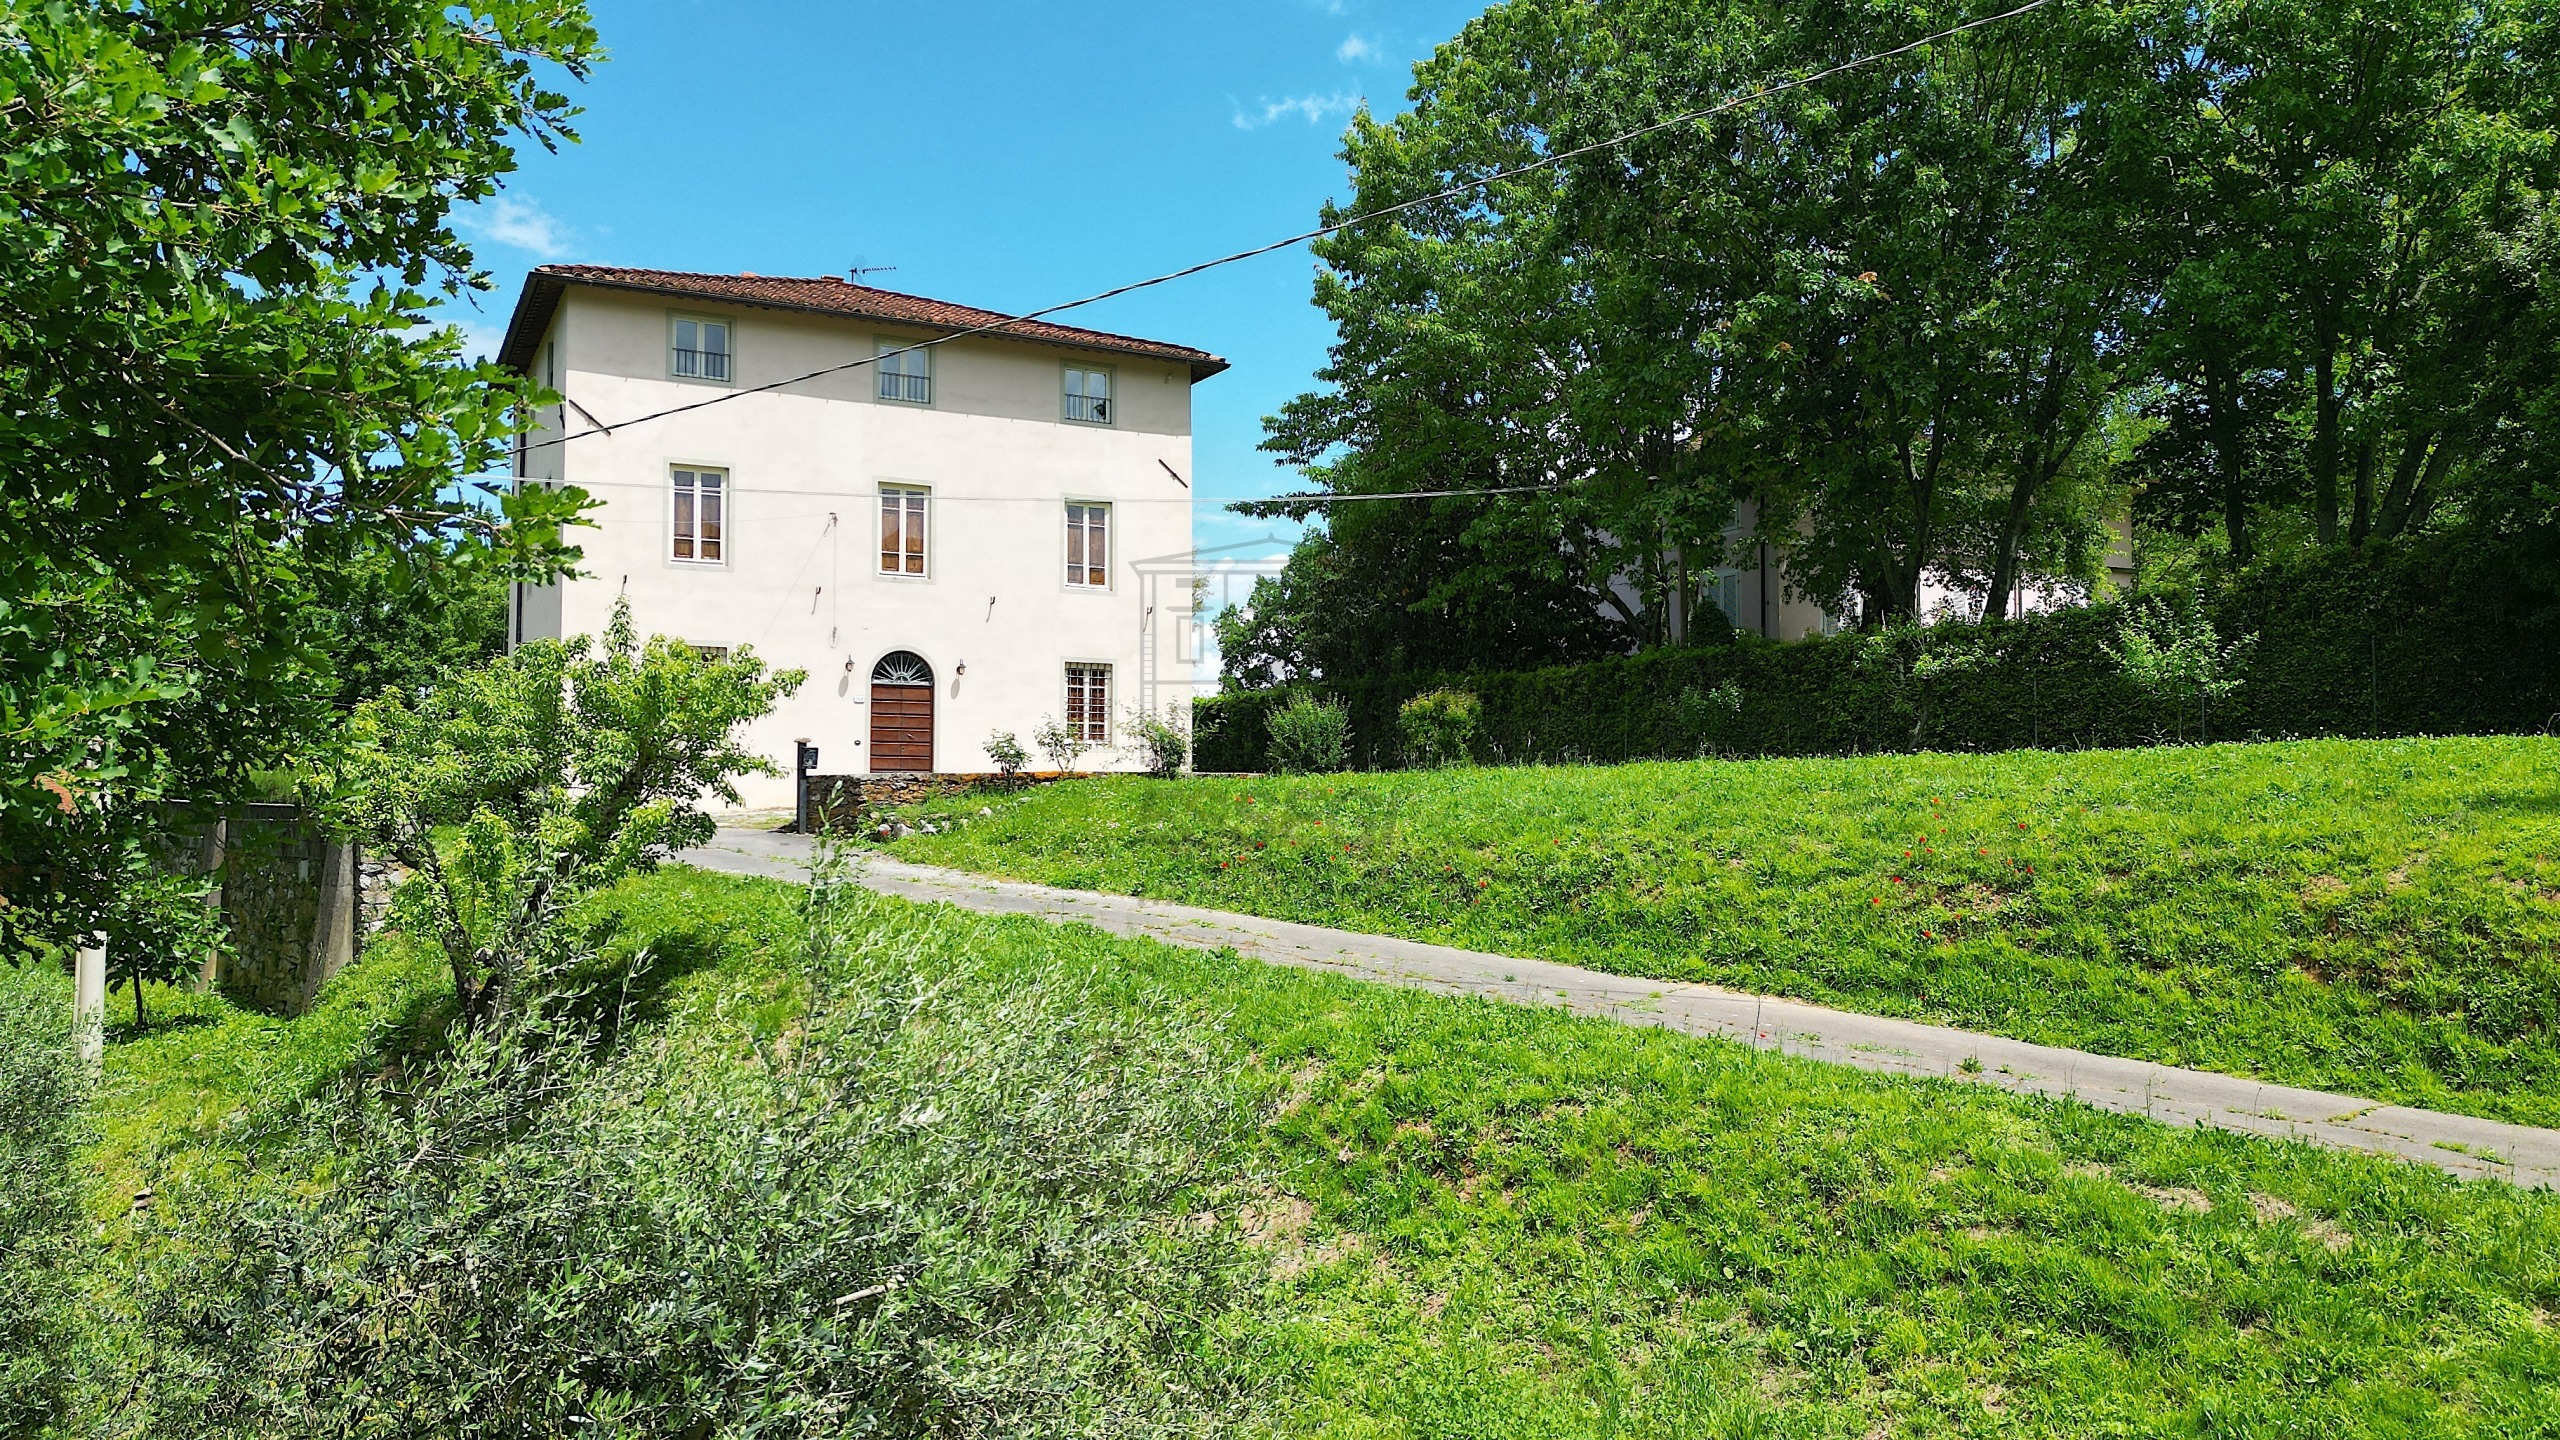 Villa con giardino in via per gattaiola e meati 598/a, Lucca